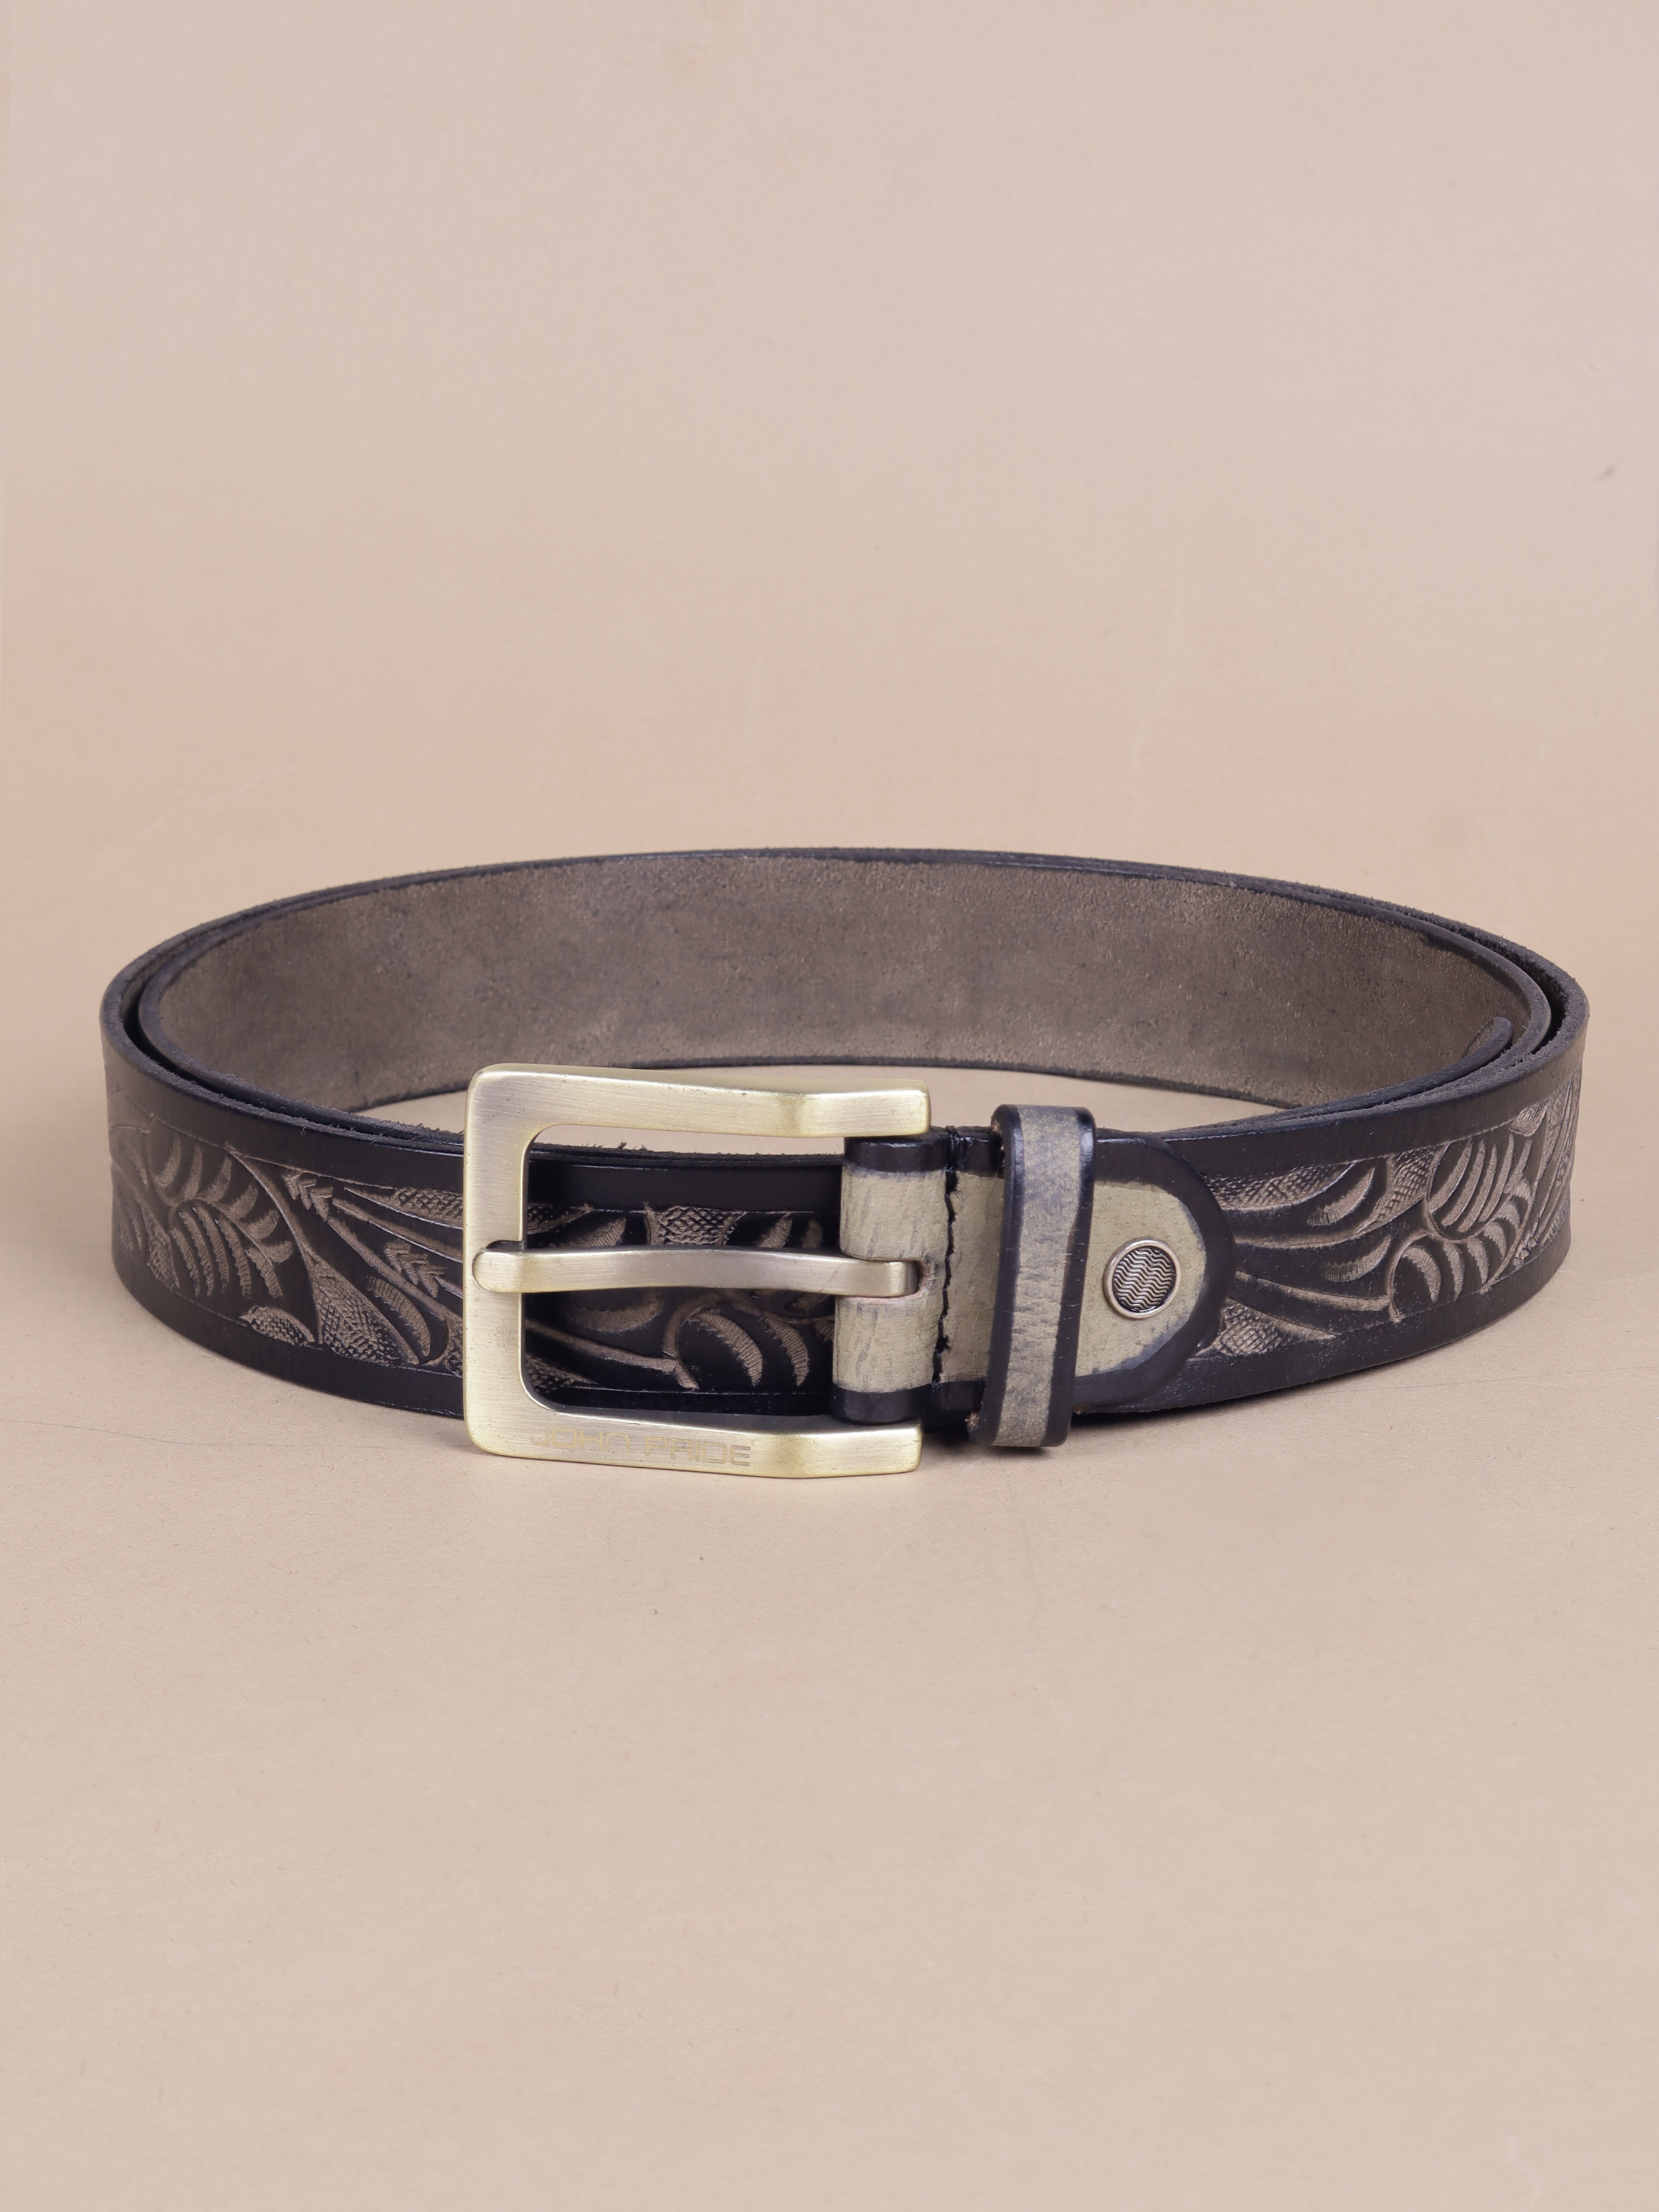 accessories/belts/JPBT1009/jpbt1009-2.jpg